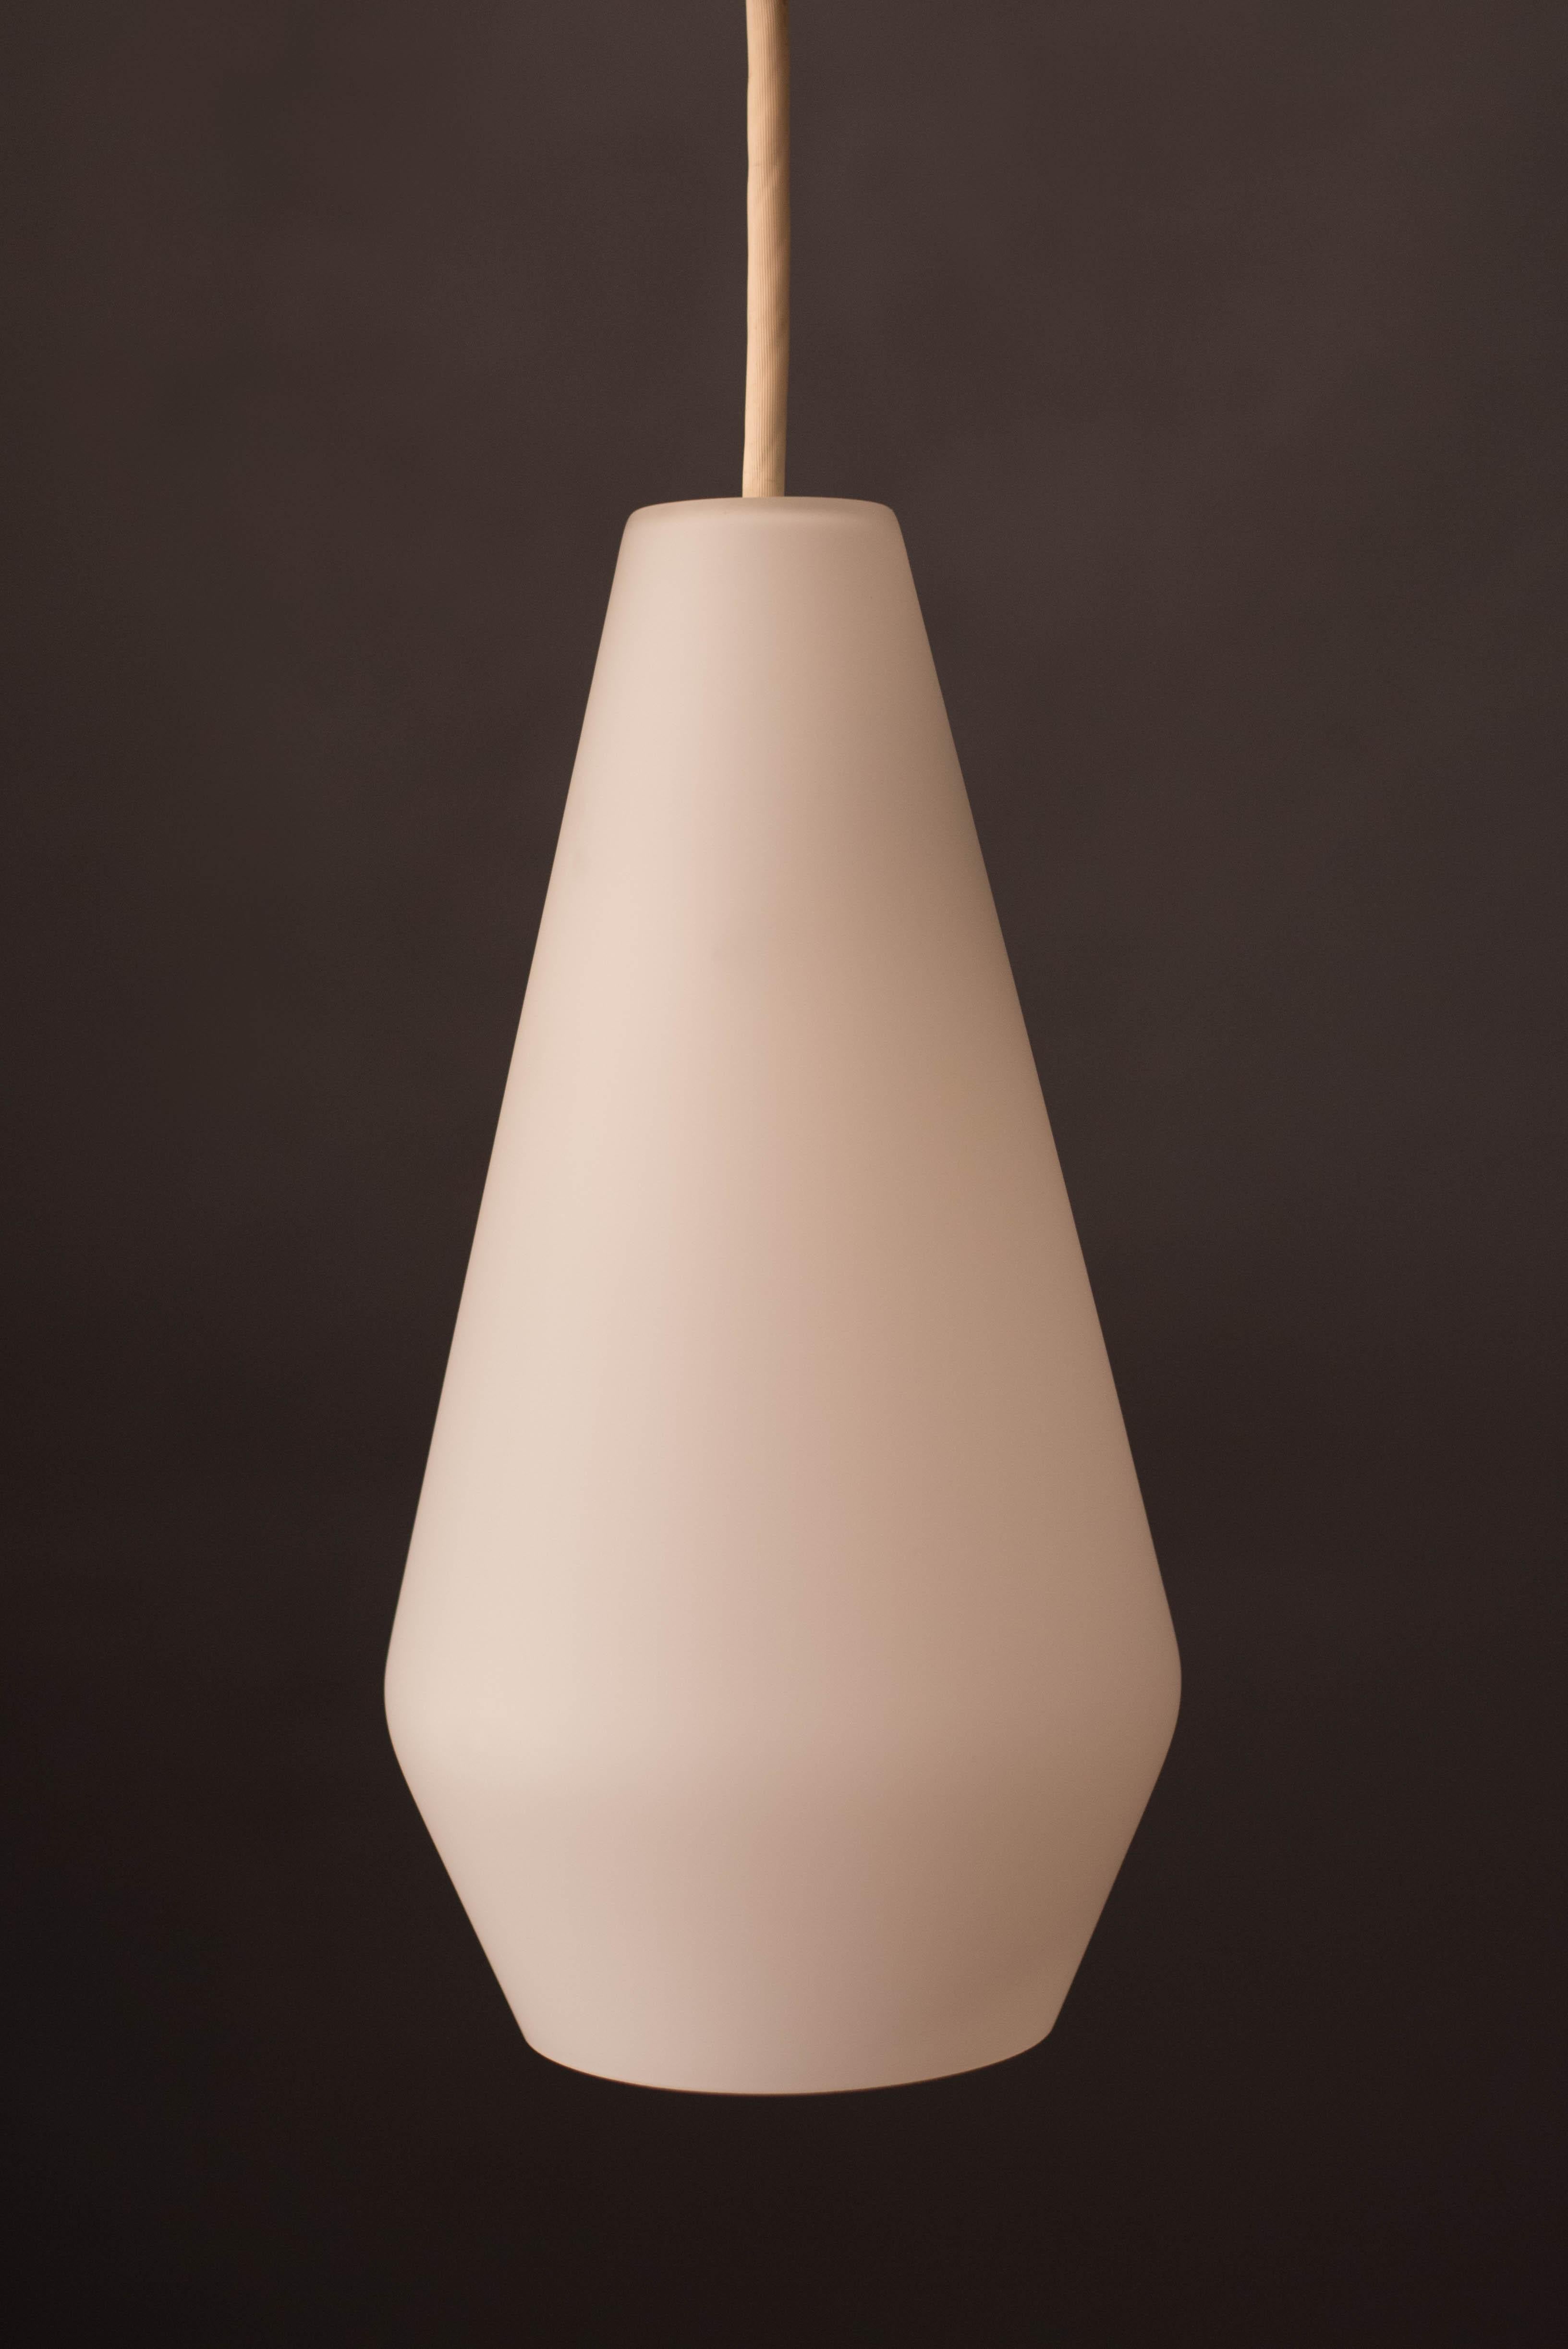 Moderne Pendelleuchte von Lightolier aus der Mitte des Jahrhunderts, ca. 1960er Jahre. Dieser einzigartige Schirm ist aus mattiertem Glas gefertigt, das ein leuchtendes Licht abgibt. Ideal für den Flur, das Schlafzimmer oder als Beleuchtung in der